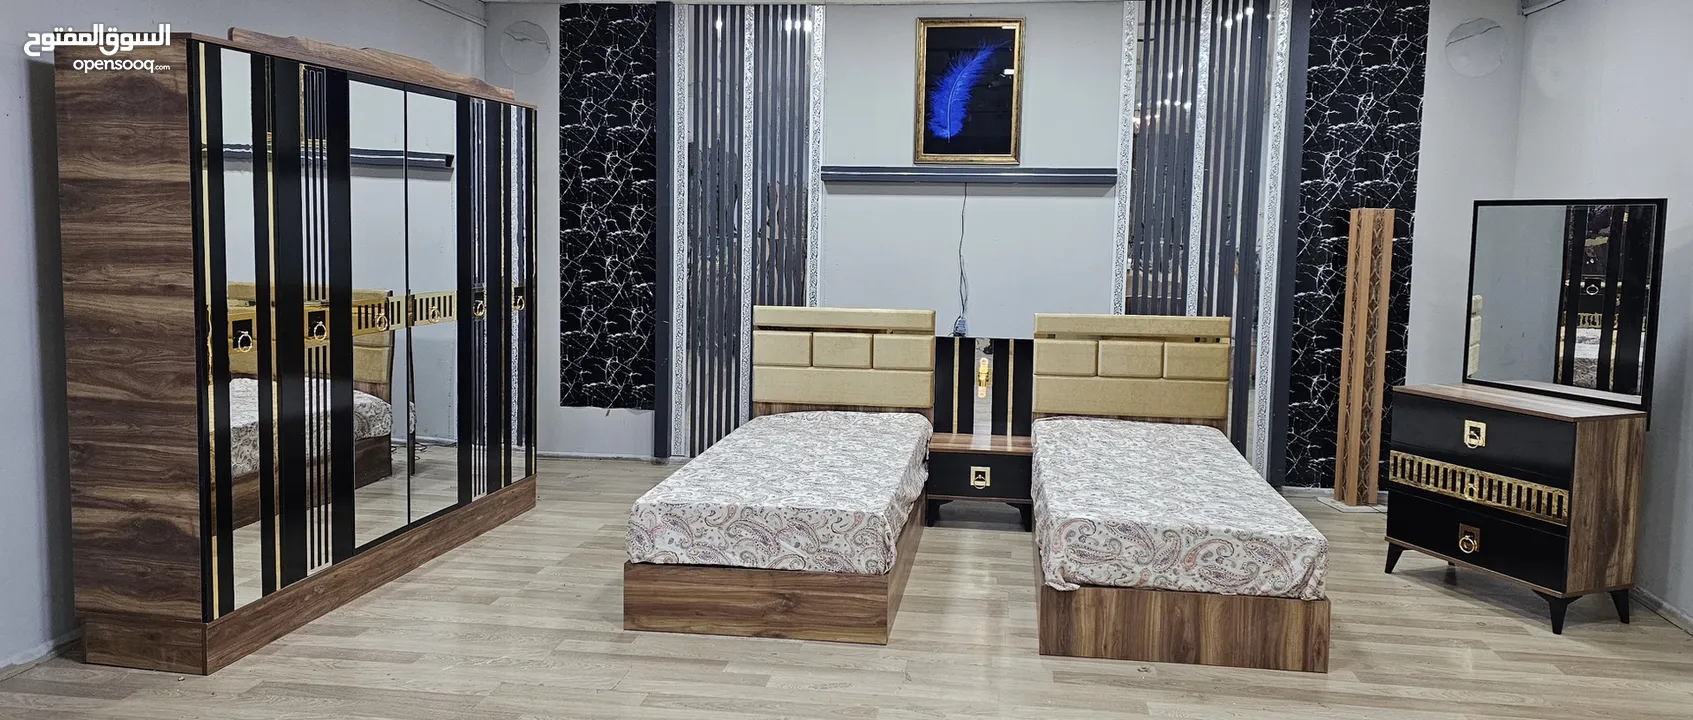 غرف نوم تركي 2 سرير 190 في 90 شامل التركيب والدوشق الطبي